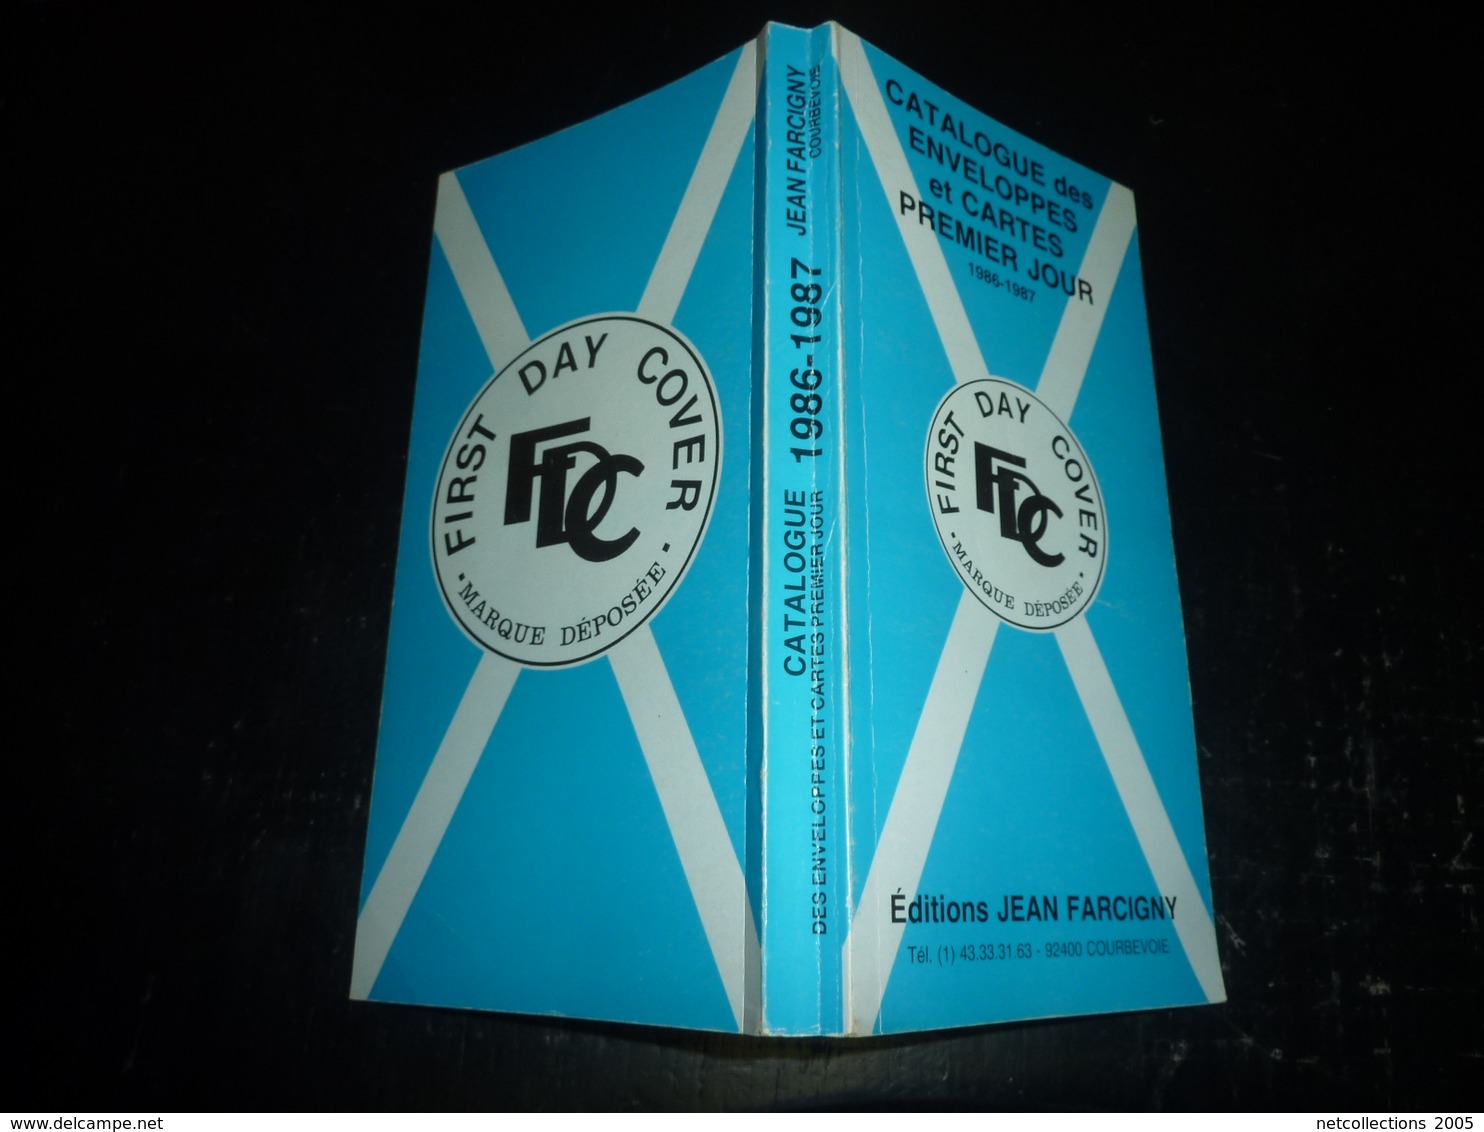 CATALOGUE DES ENVELOPPES ET CARTES PREMIER JOUR 1986-1987 FIRST DAY COVER EDITIONS JEAN FARCIGNY - Thématiques